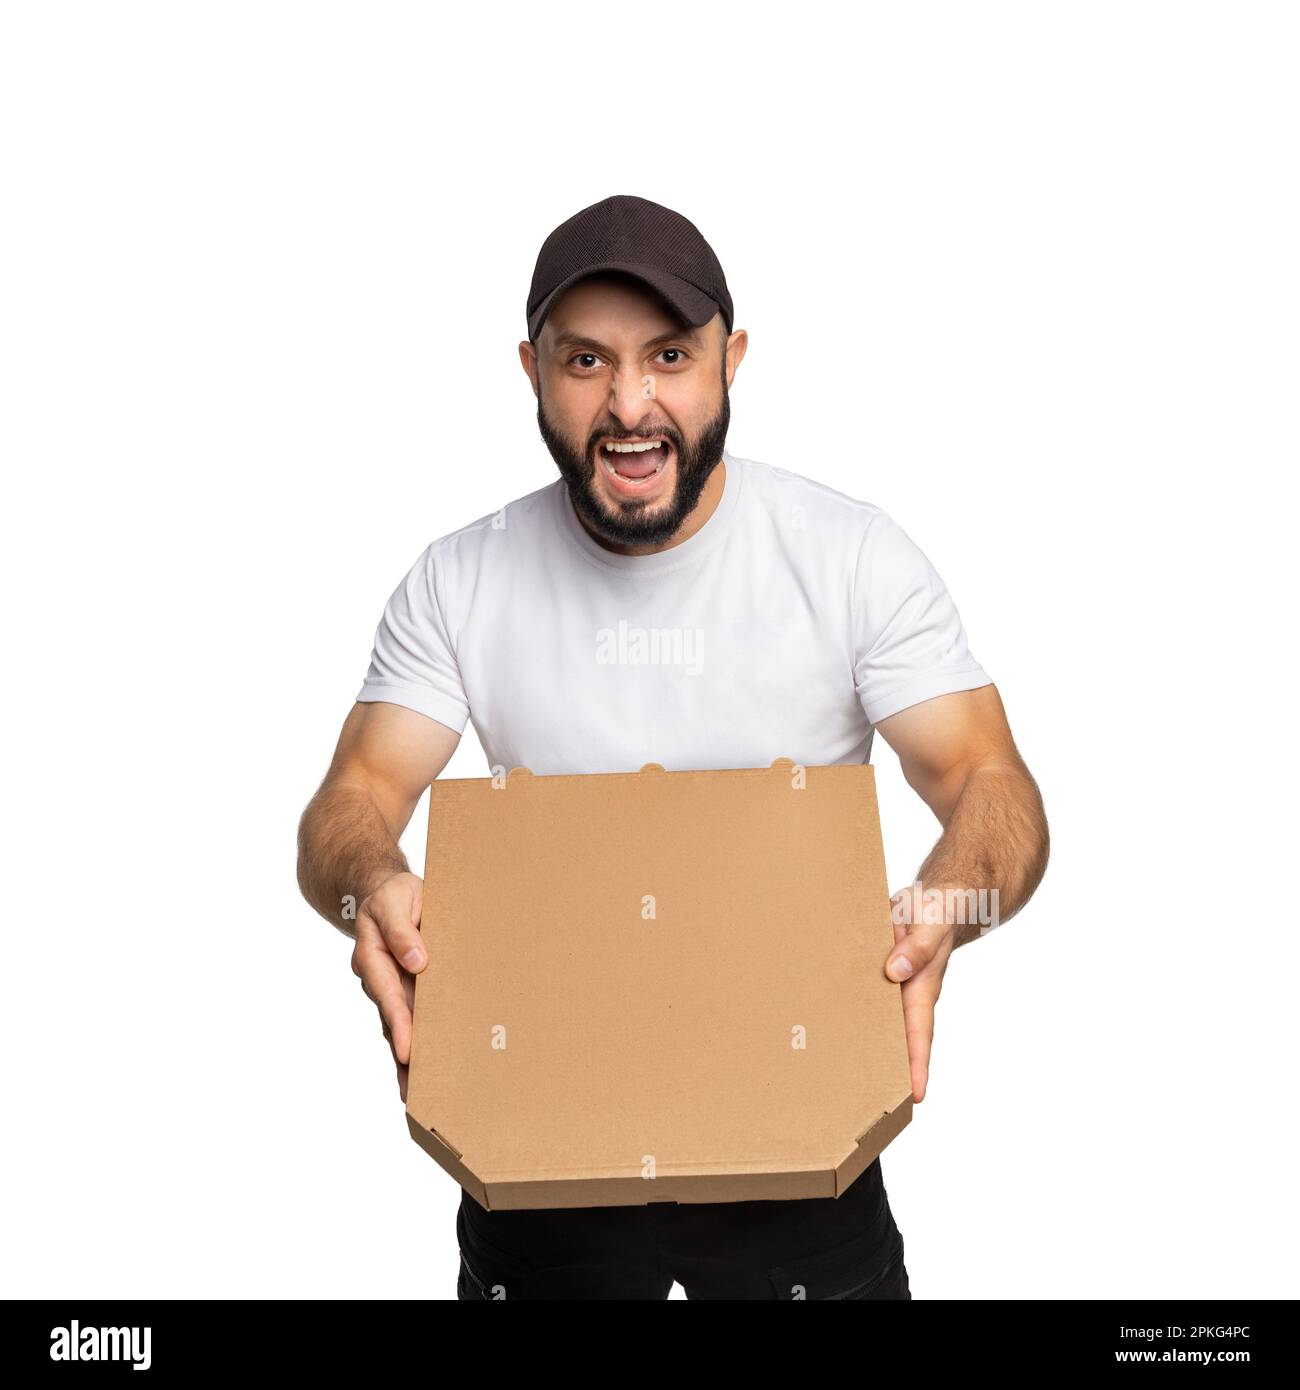 Un jeune barbu démontre de manière agressive une boîte à pizza fermée isolée sur fond blanc. Peut être utilisé pour représenter votre propre logo. Banque D'Images